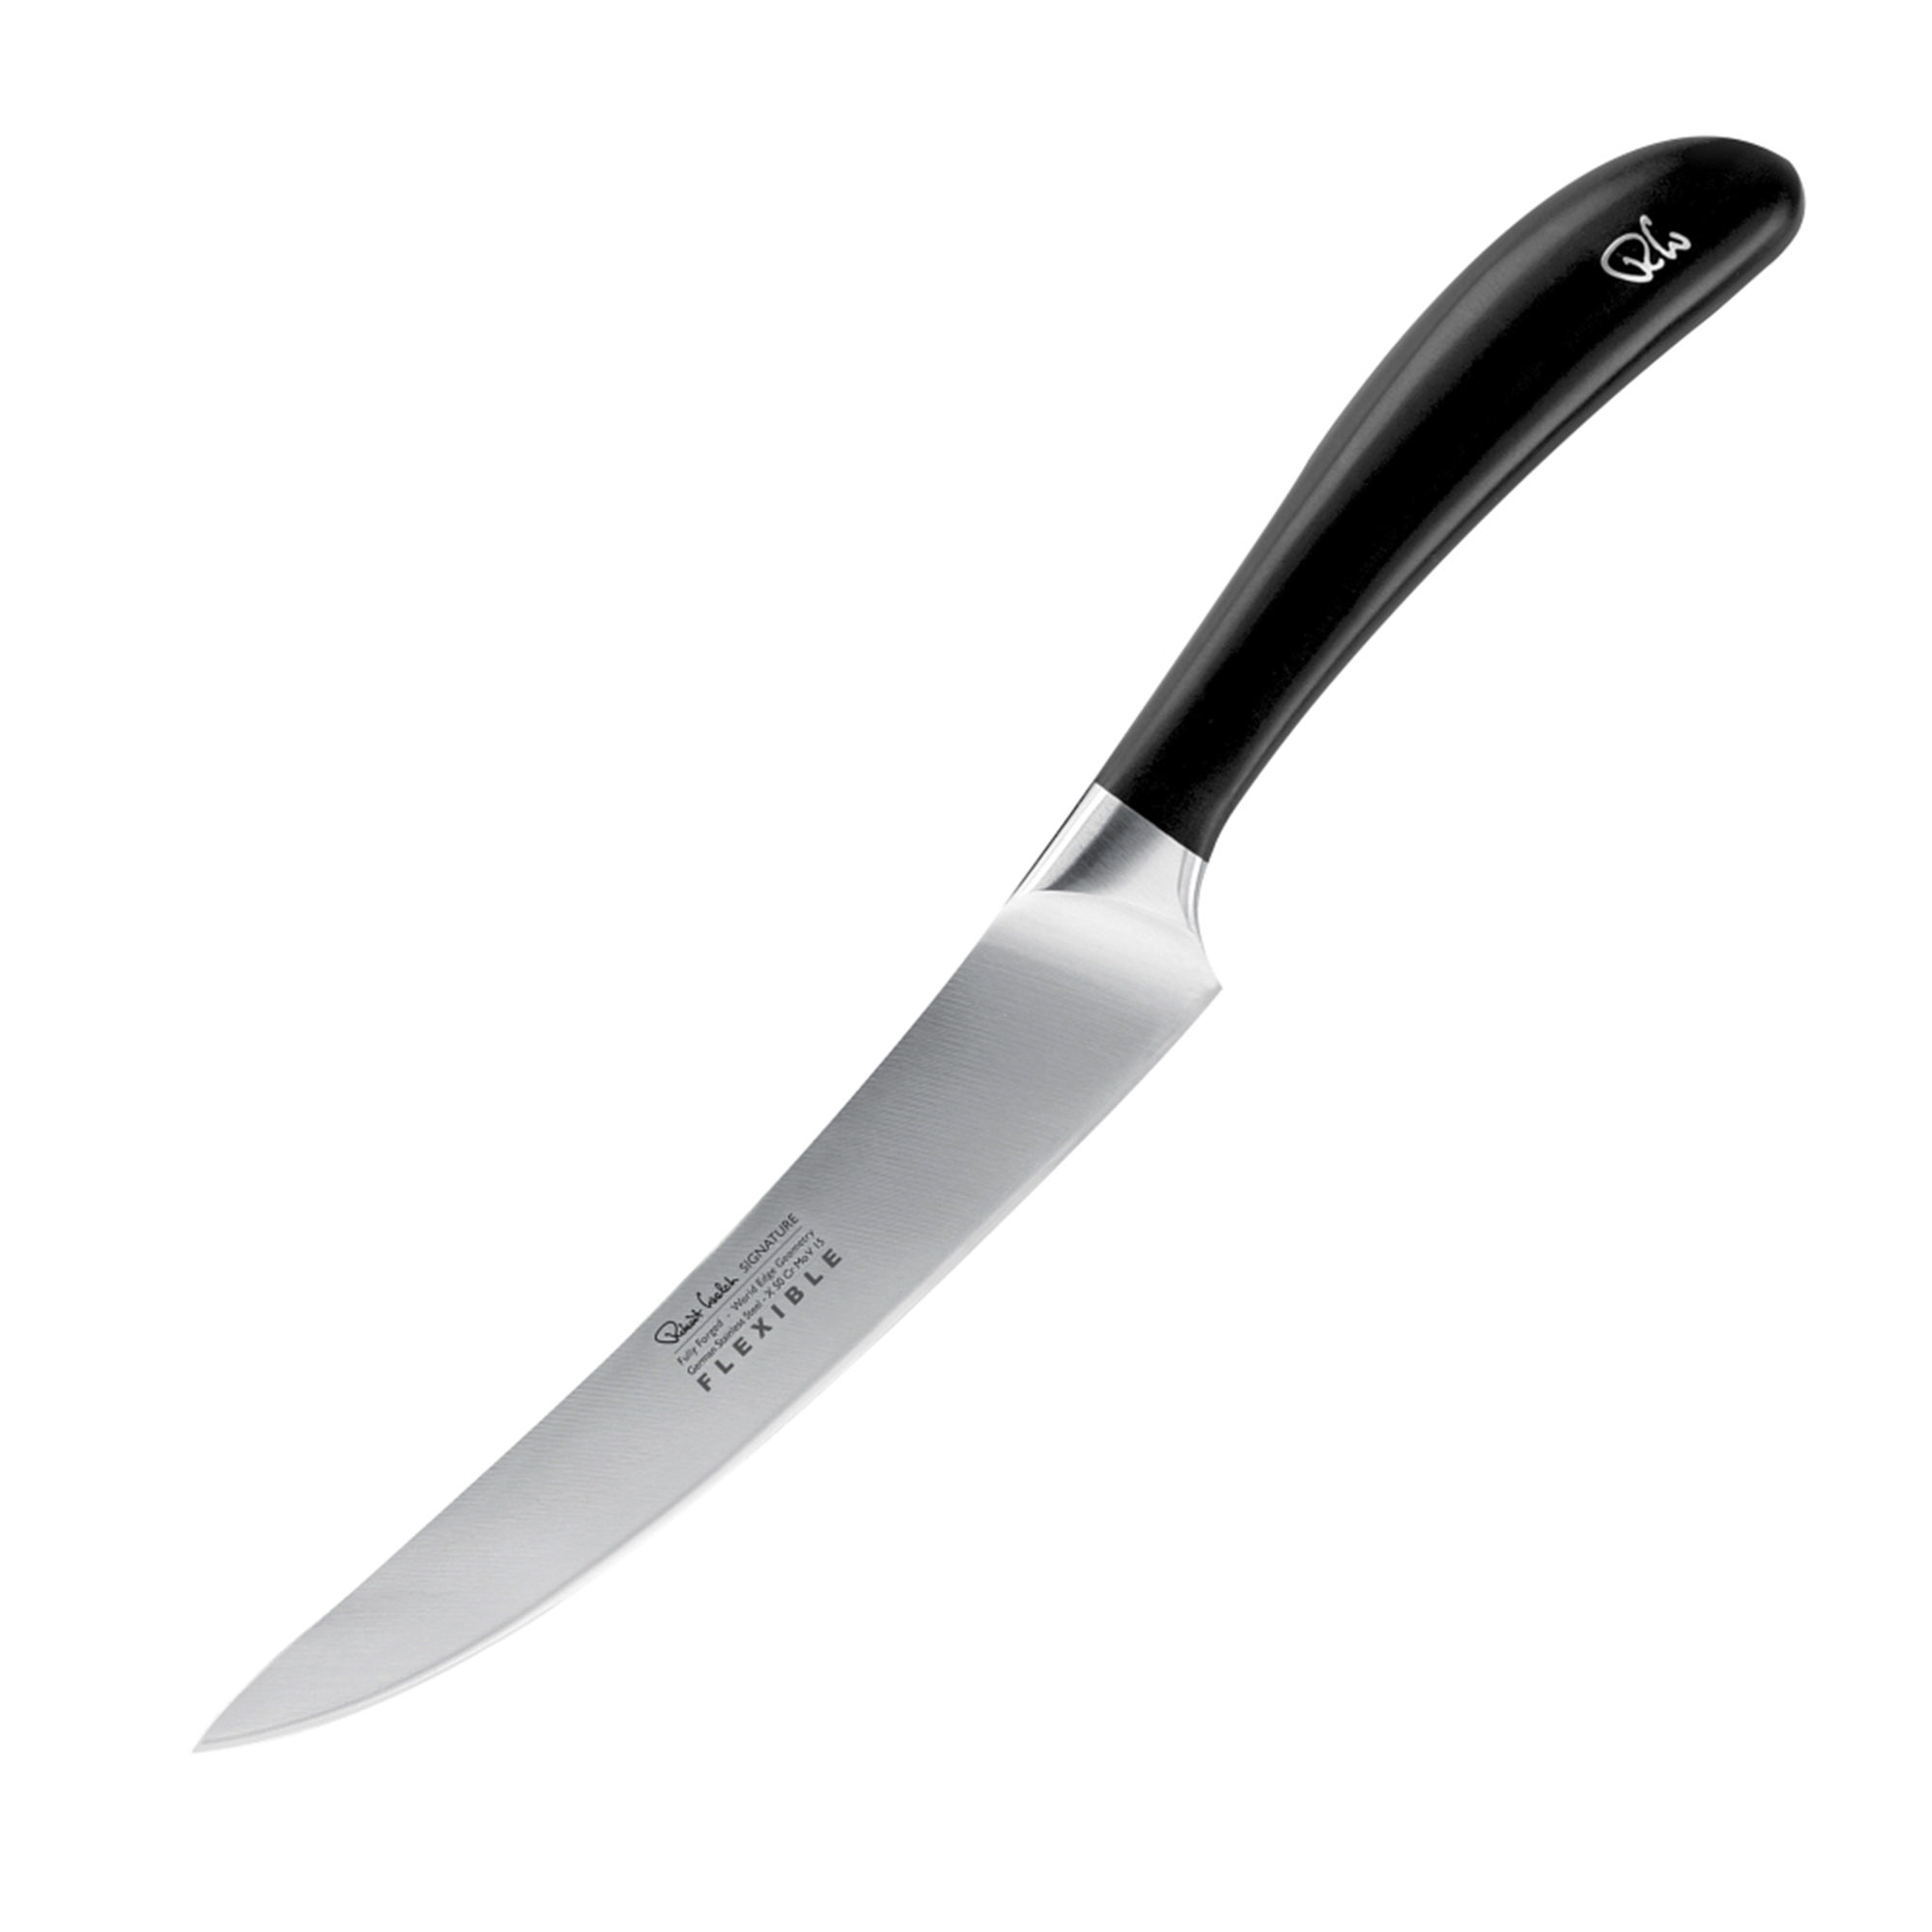 Кухонный филейный нож Robert Welch Signature 16 см, цвет серебряный - фото 1